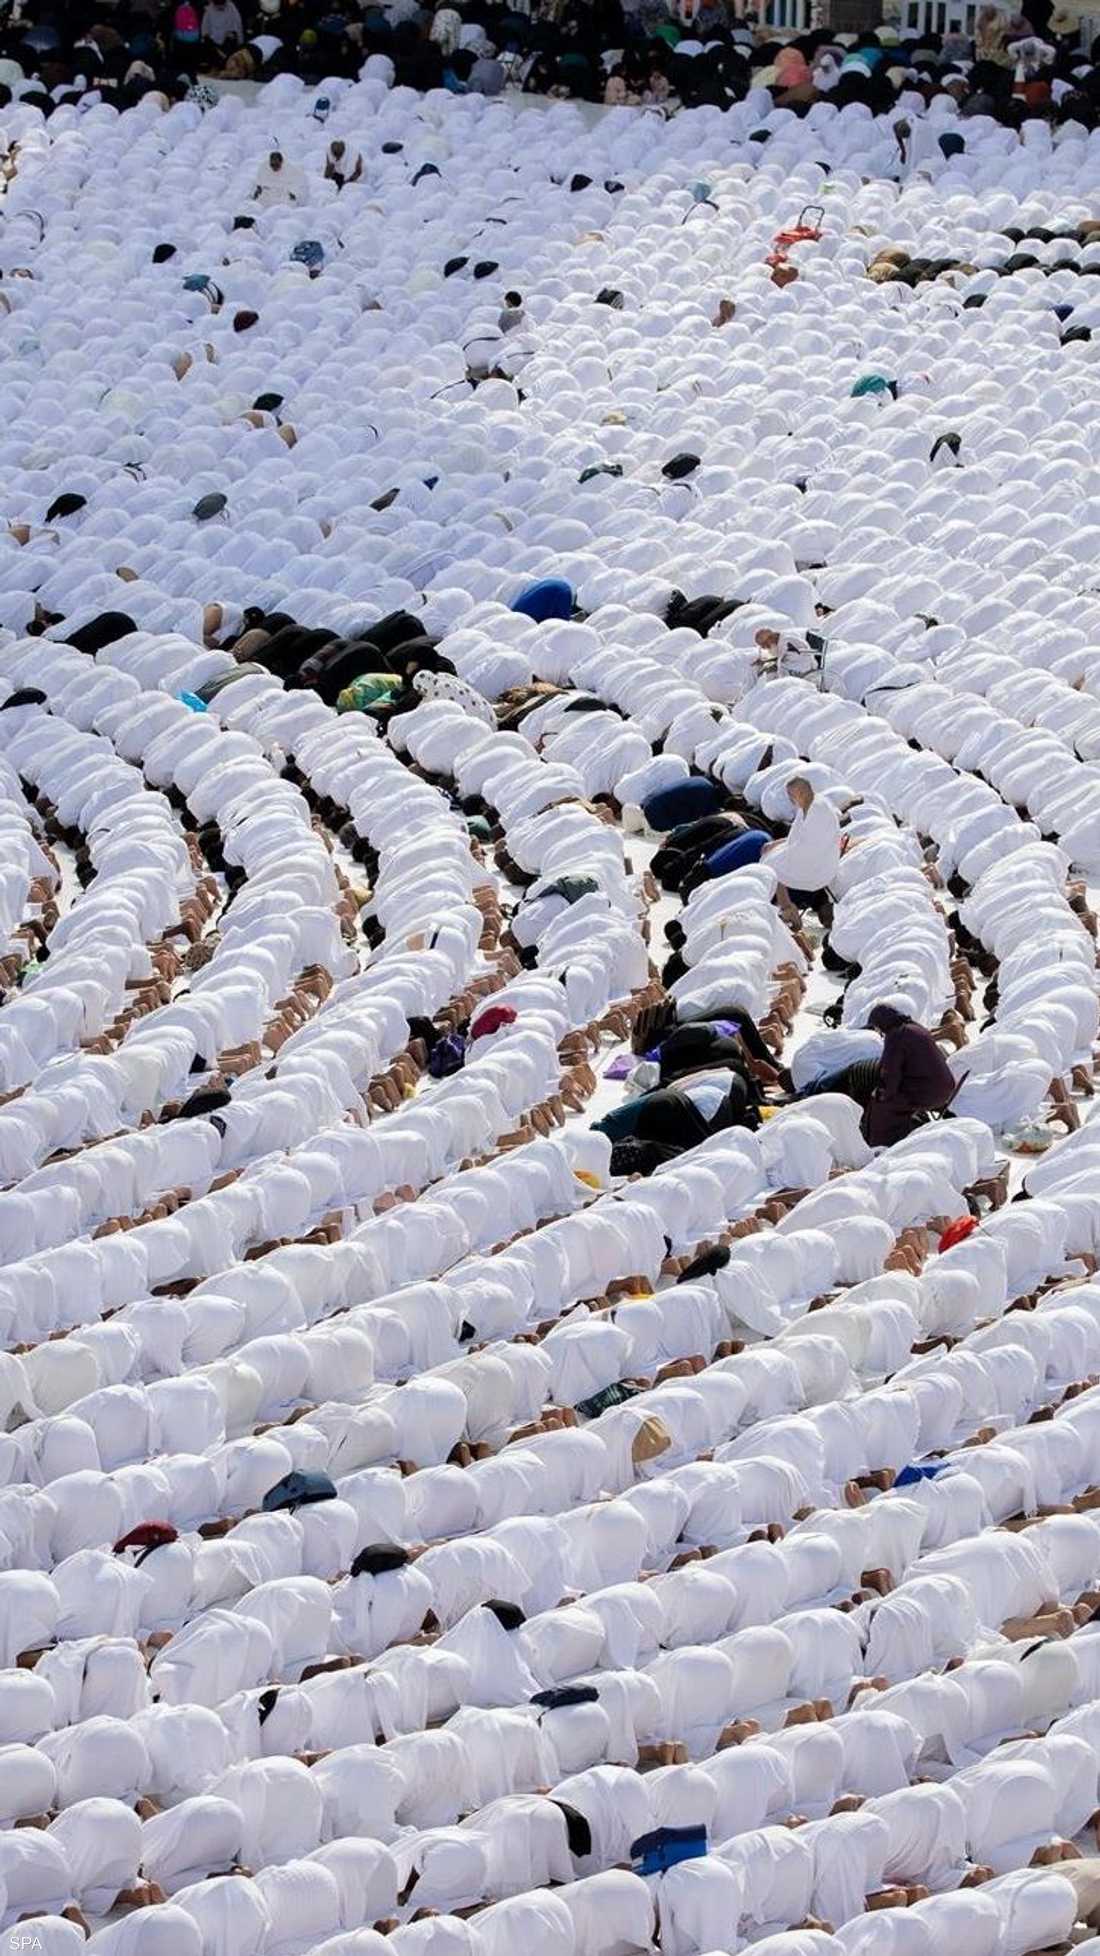 شهد المسجد الحرام في مكة المكرمة، خلال اليوم الـ27 من شهر رمضان، توافد أعداد كبيرة من المعتمرين والمصلين.